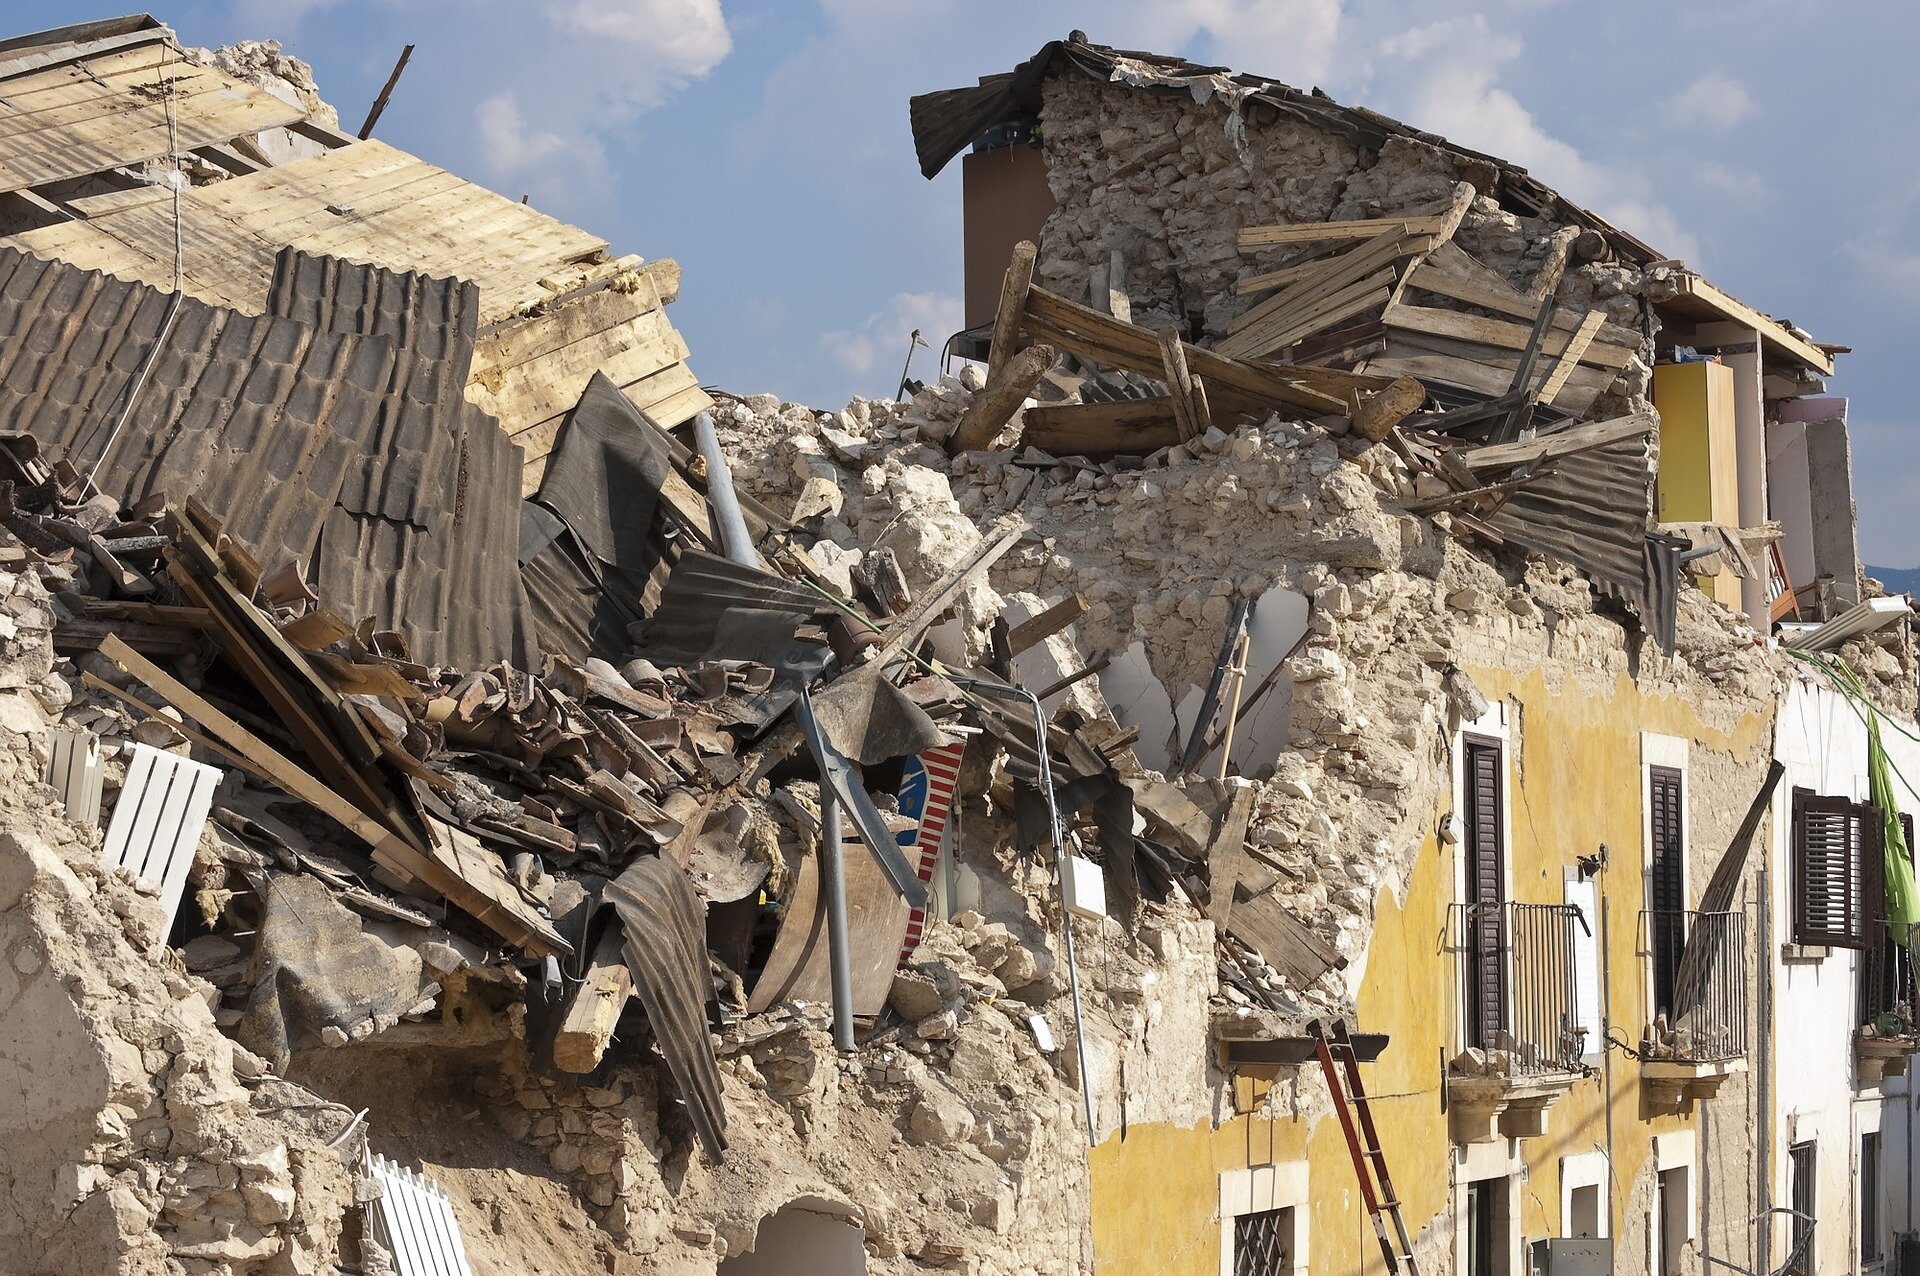 Zdjęcie przedstawia ruiny budynku zniszczonego w wyniku trzęsienia ziemi we Włoszech. Ściany domu zawaliły się do środka. Widoczny jest gruz, pozostałości dachu, mebli. Część budynku ocalała i stoi niezniszczona. Budynek jednak nie nadaje się do zamieszkania.